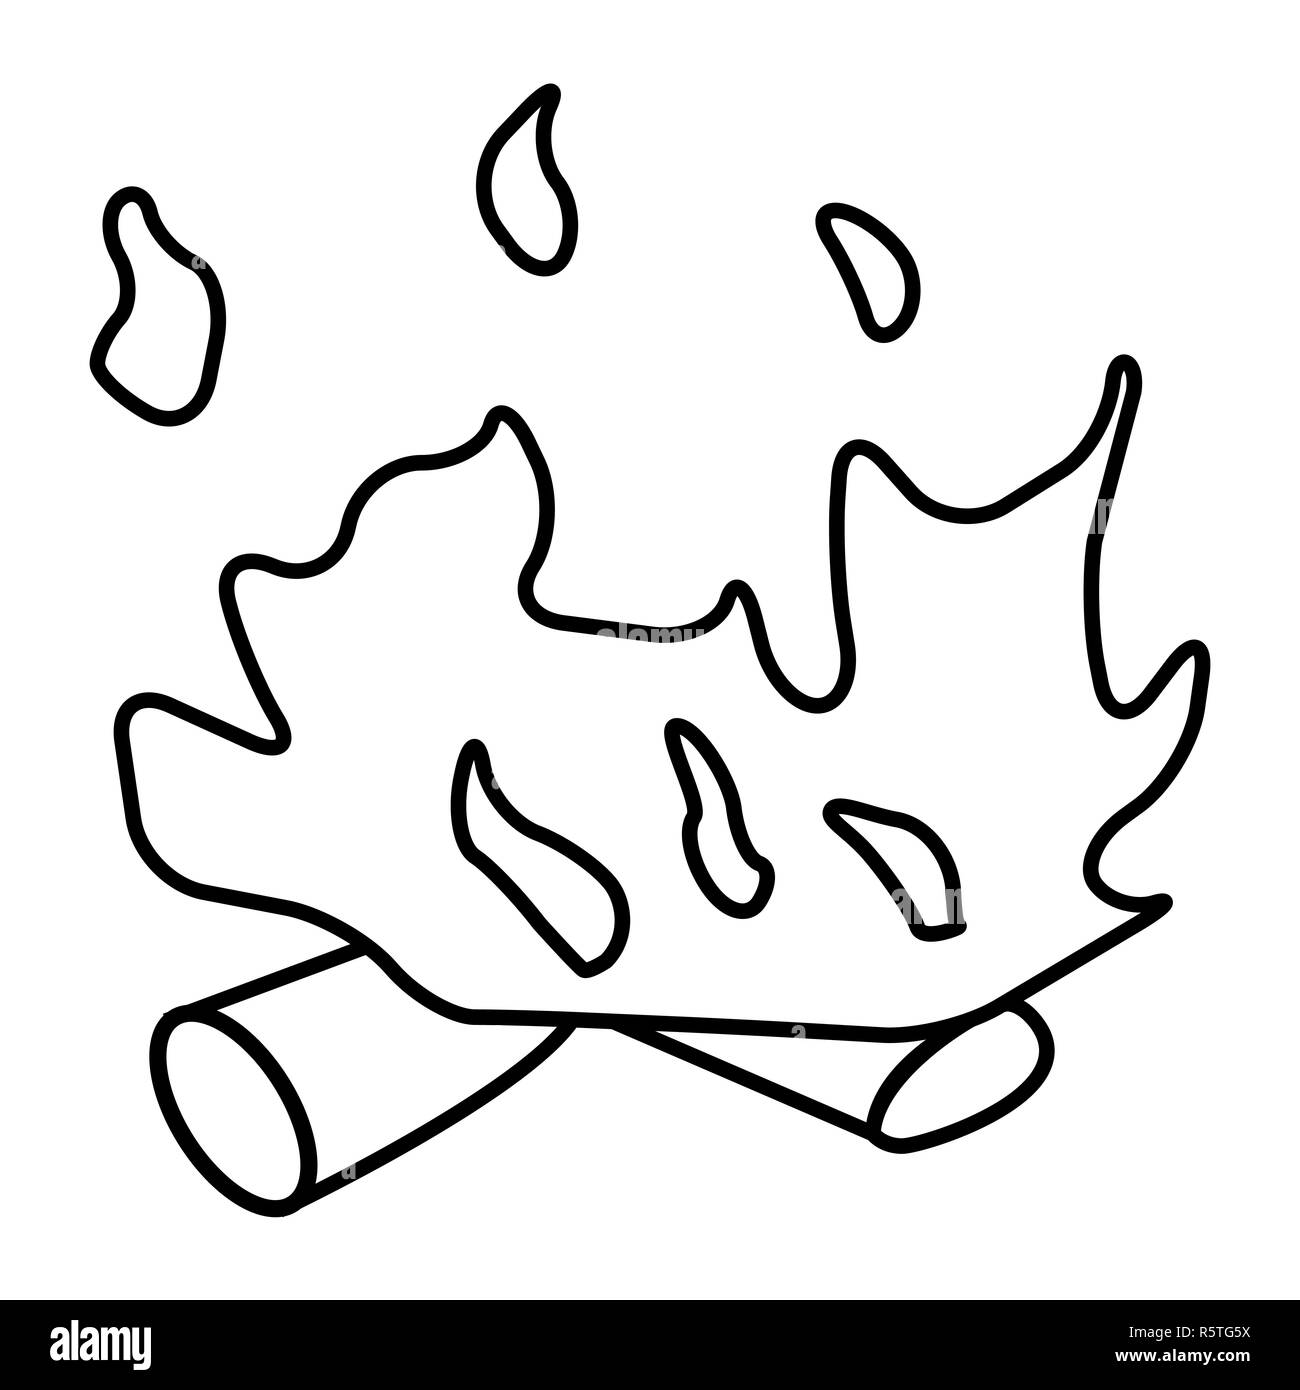 Feuer Struktursymbol, Icon Design. Vector Illustration auf weißem Hintergrund. Stockfoto